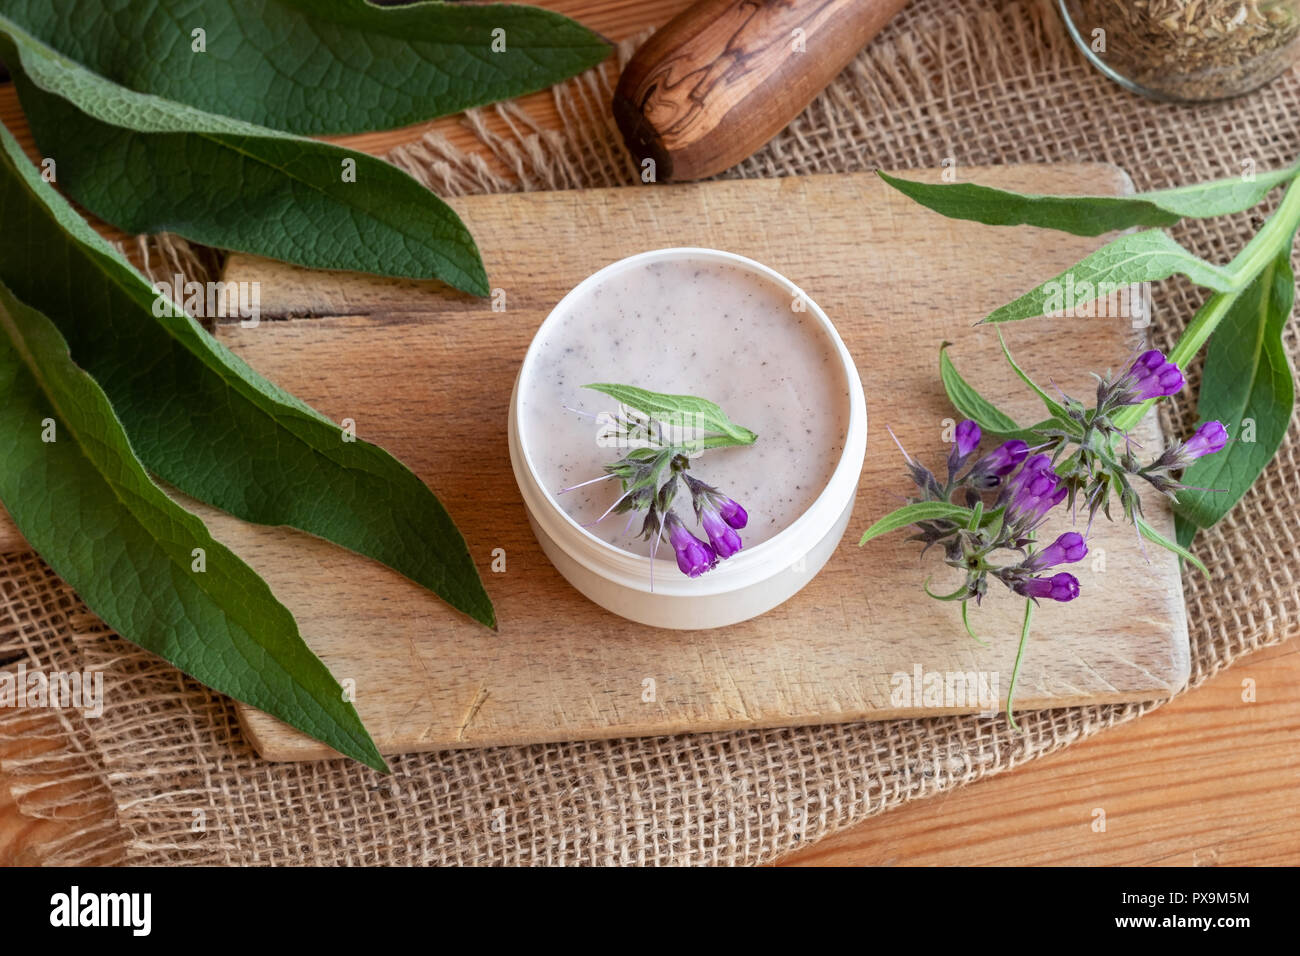 Un pot de pommade racine de consoude fait maison avec des produits frais  Symphytum officinale Plante Photo Stock - Alamy